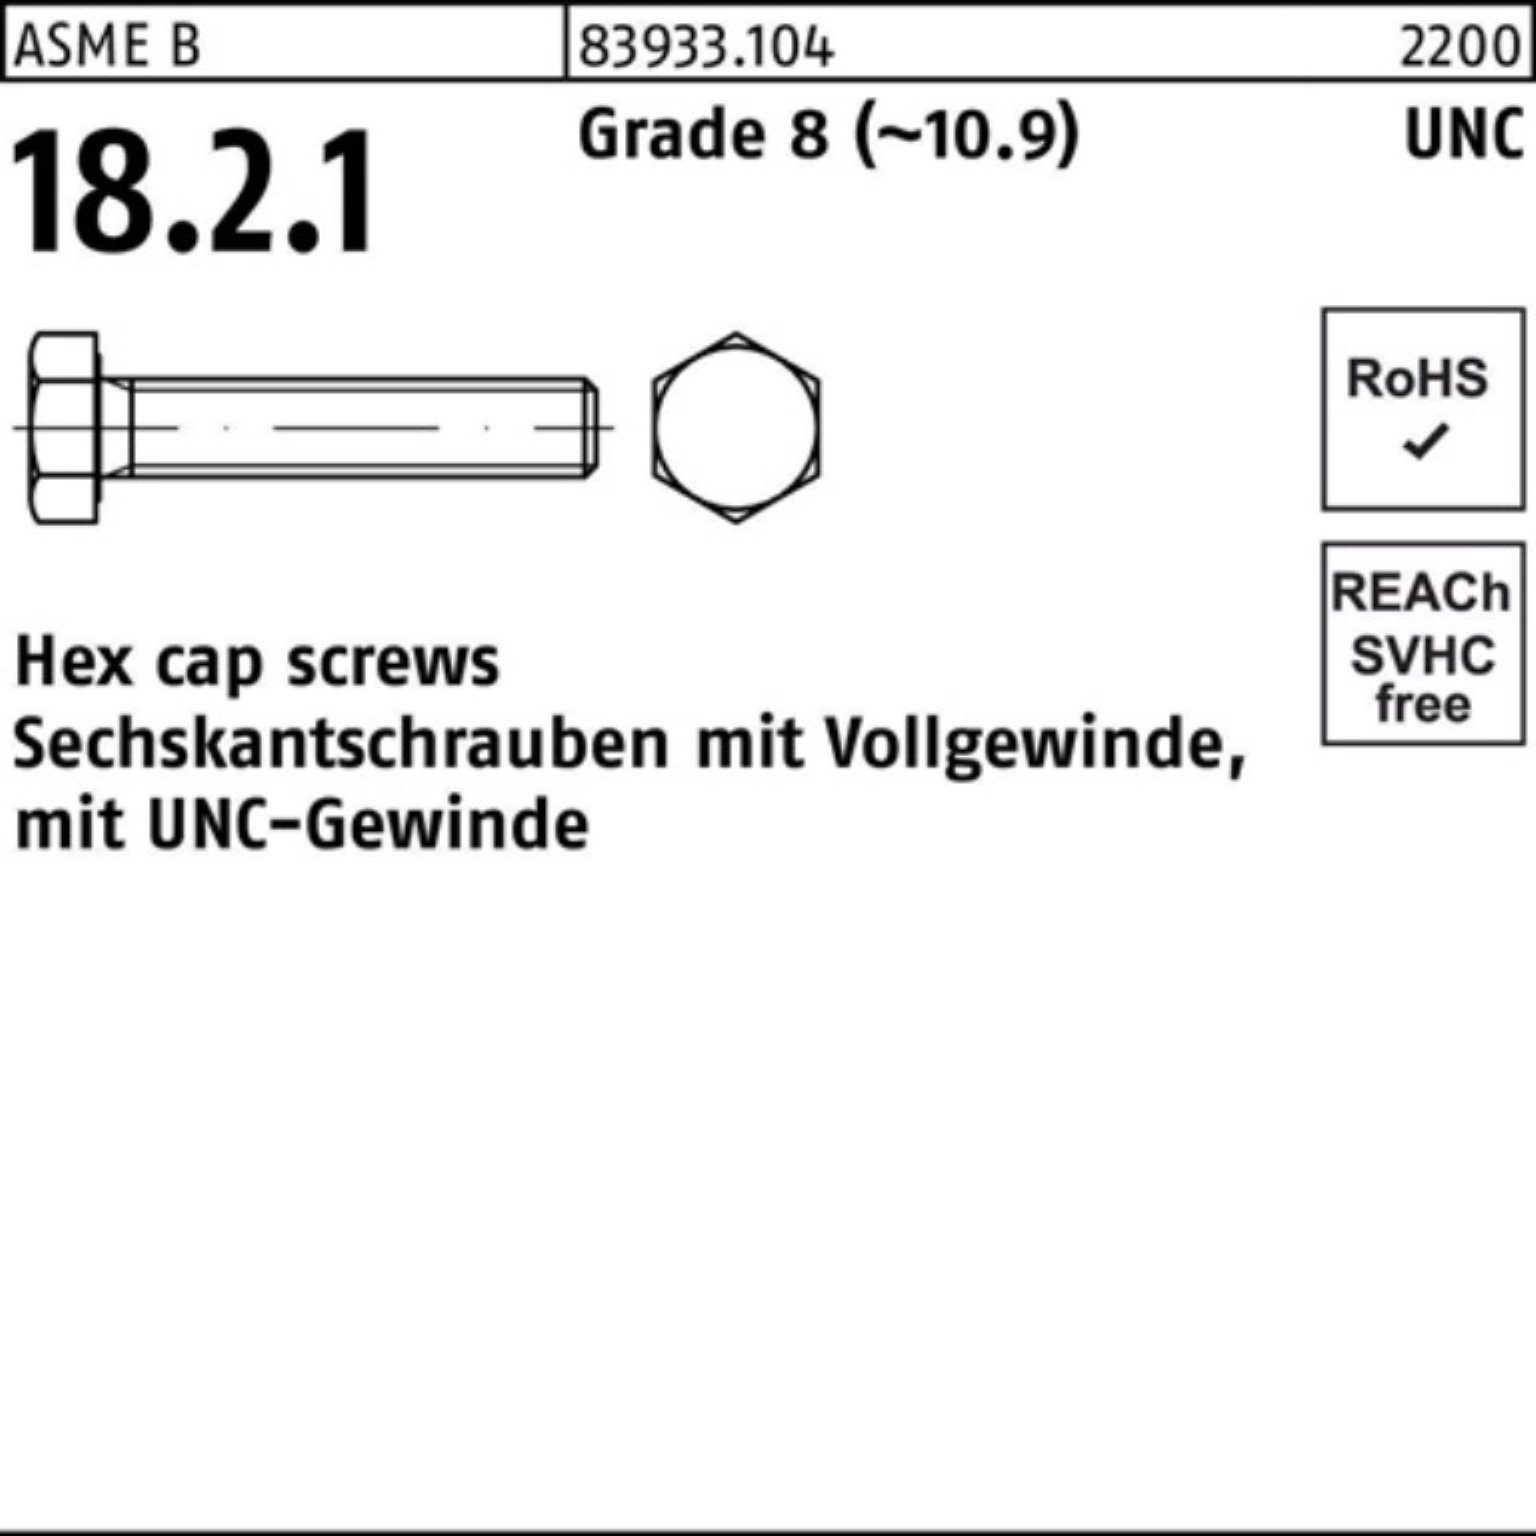 Reyher Sechskantschraube 100er Pack Sechskantschraube R 83933 UNC-Gewinde VG 3/8x 1 1/4 Grade 8